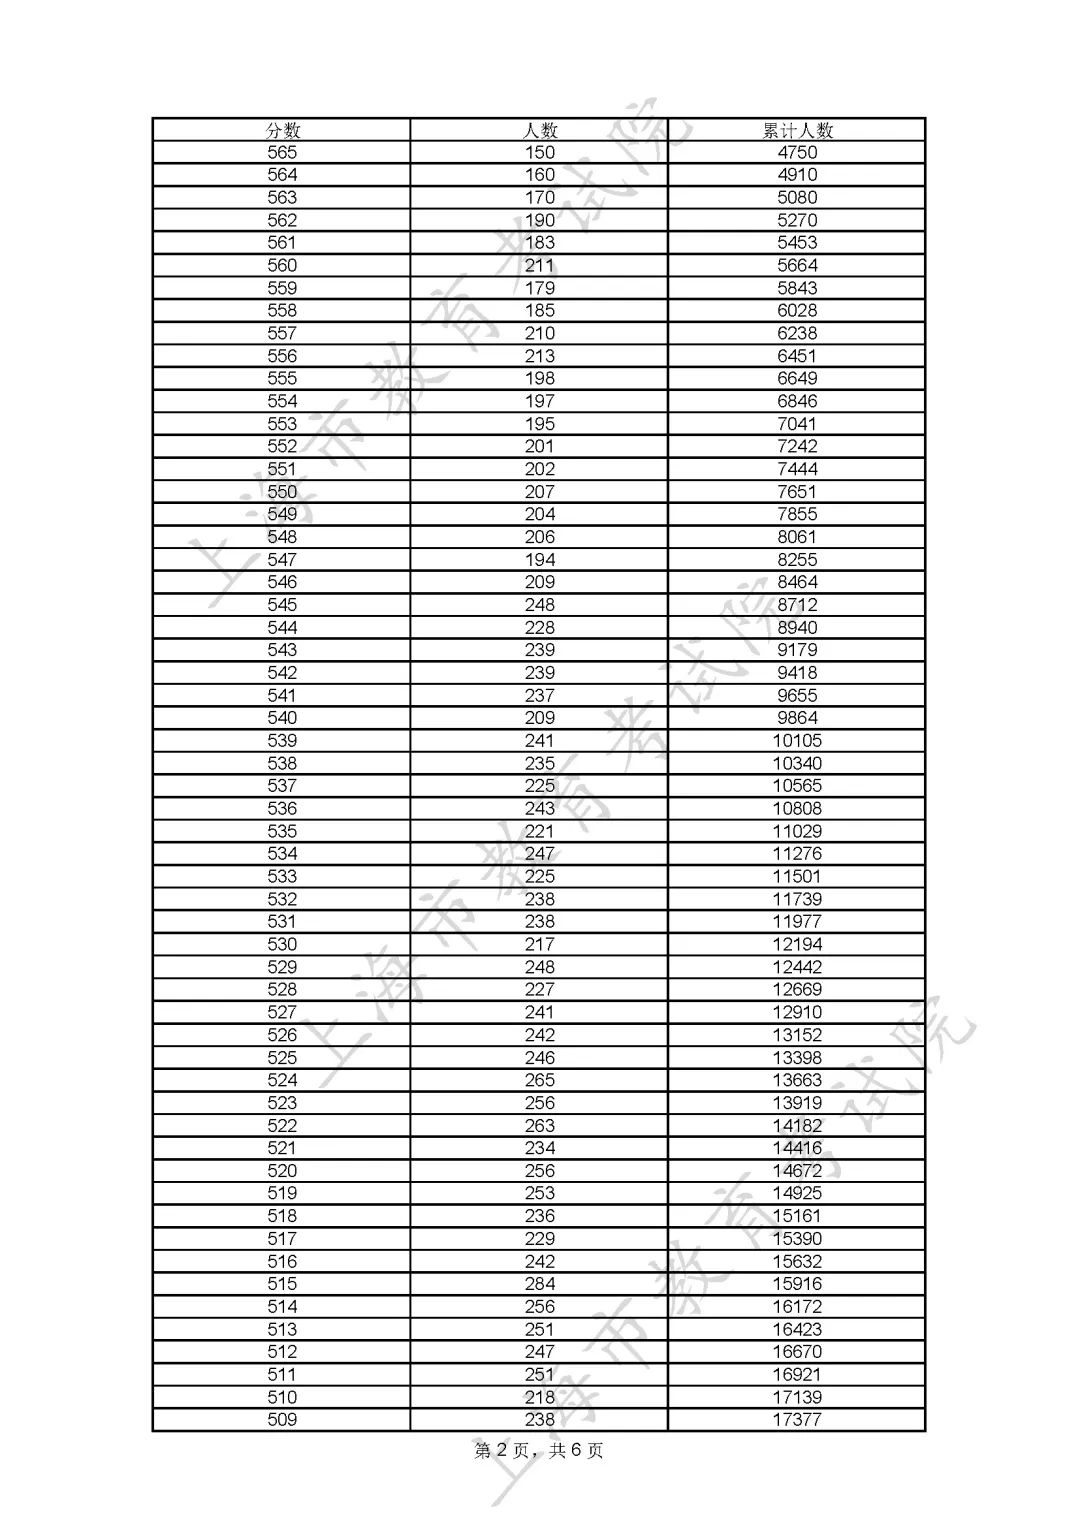 2023上海高考一分一段表公布 分数位次排名【综合】